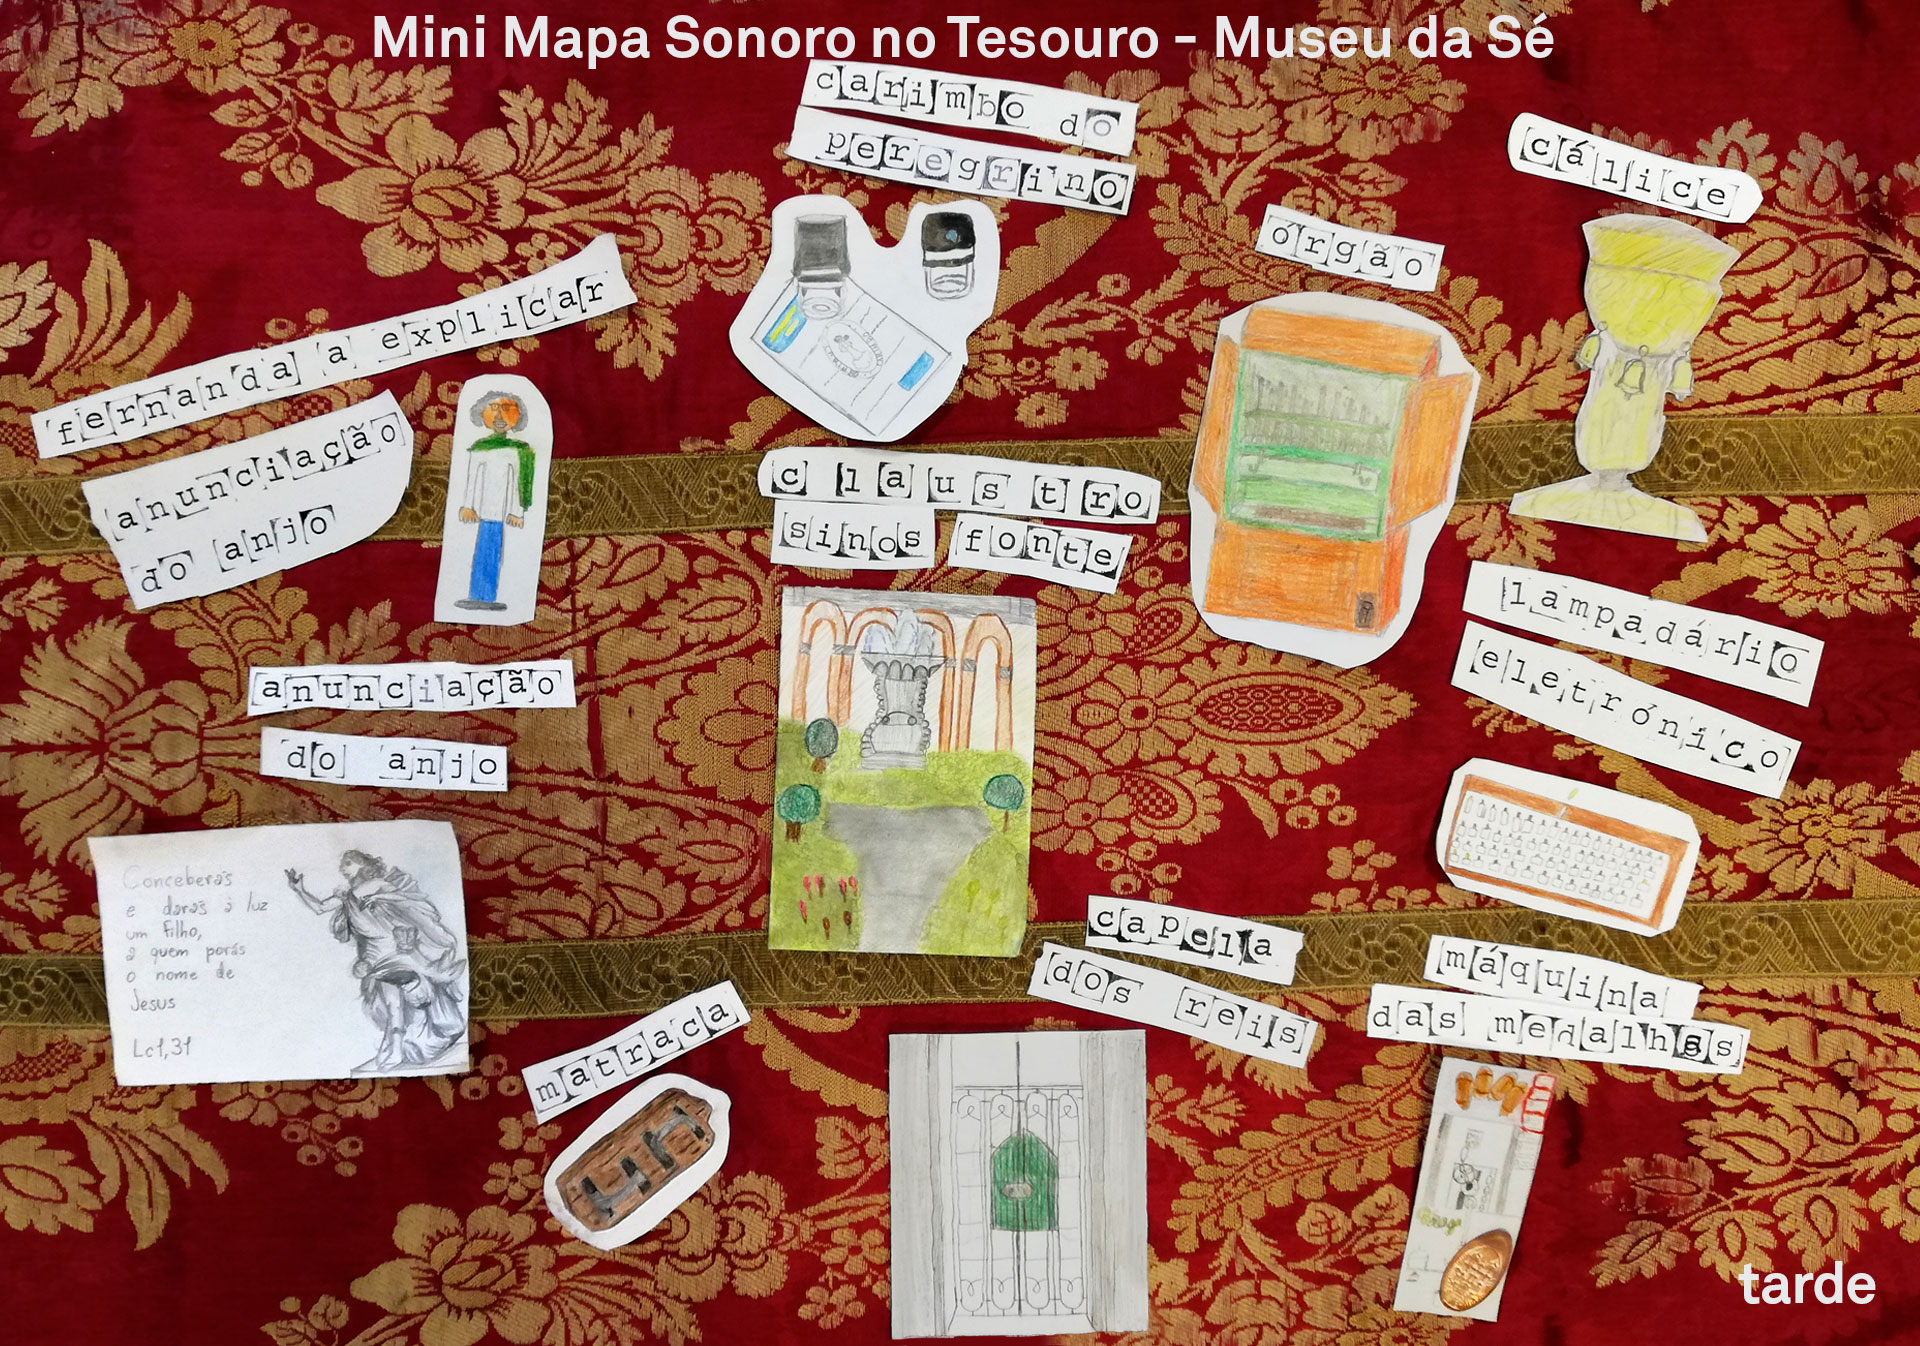 Mapa Mini Mapa Sonoro Mini Mapa Sonoro no Tesouro-Museu da Sé de Braga - Conservatório de Música Calouste Gulbenkian